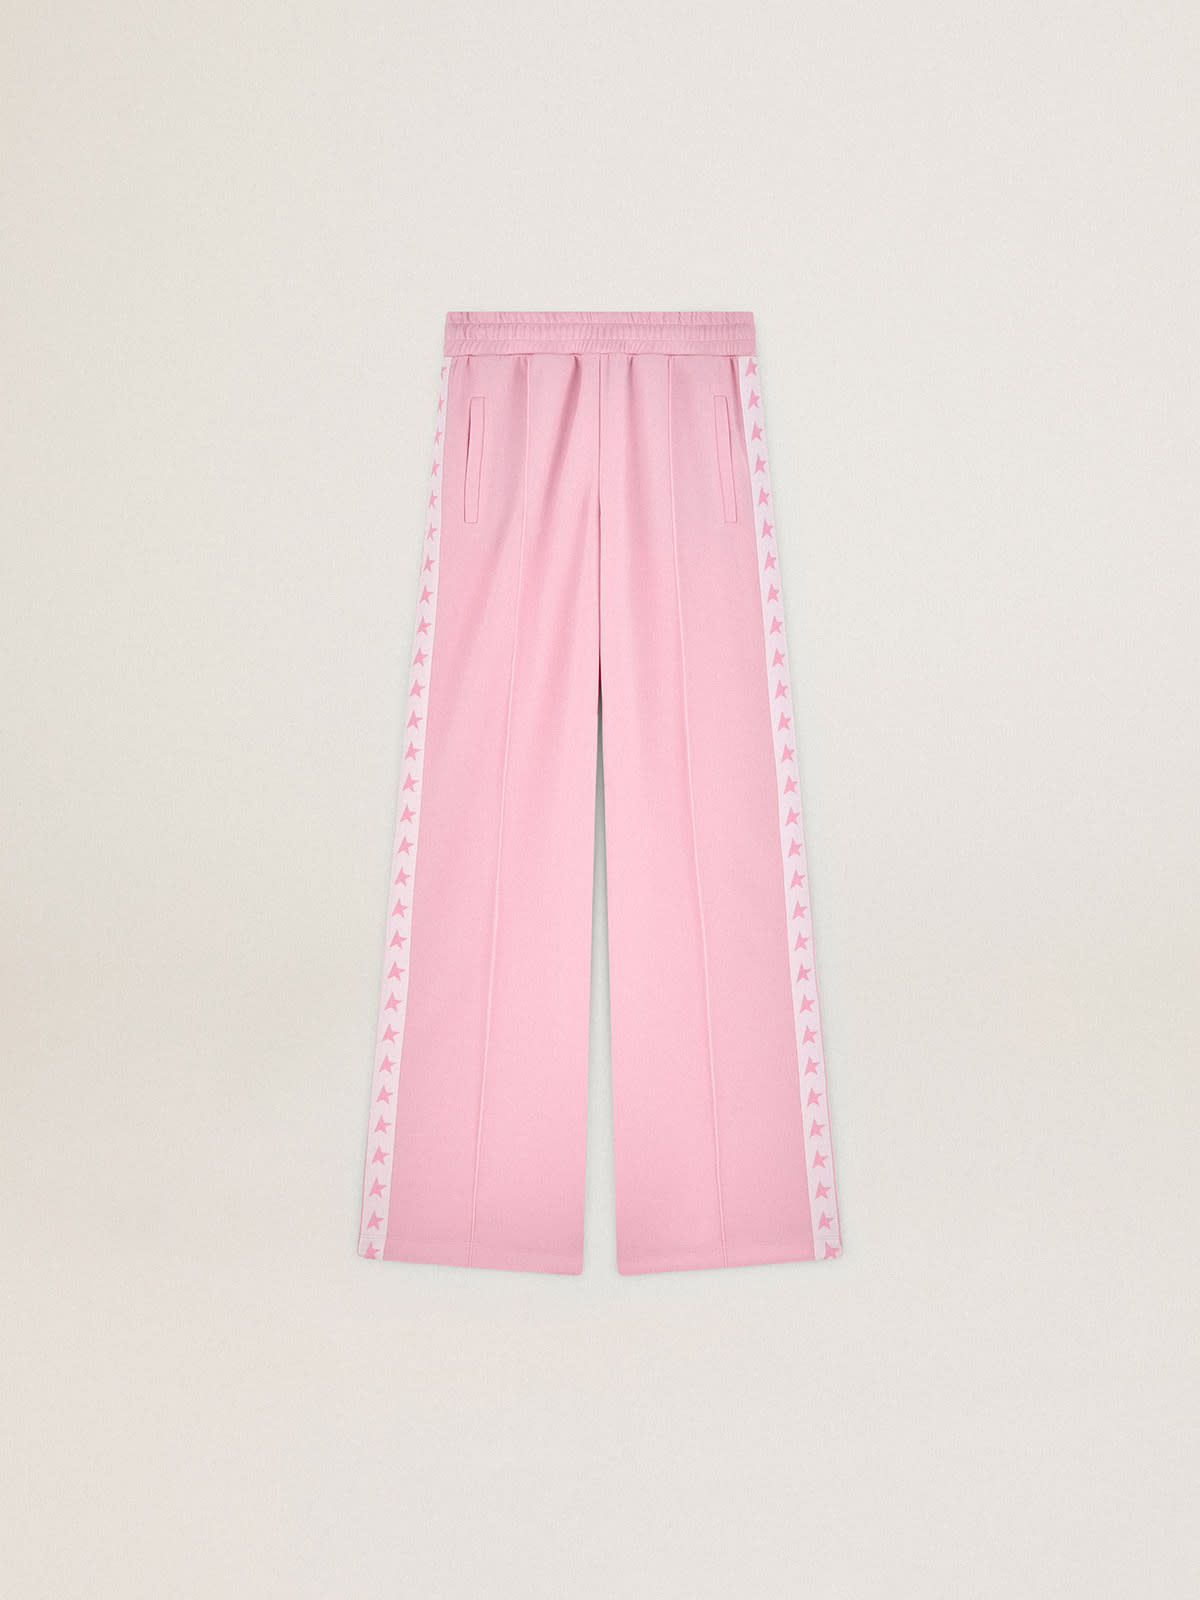 Golden Goose - Pantalone jogging da donna di colore rosa con fascia e stella sui lati in 